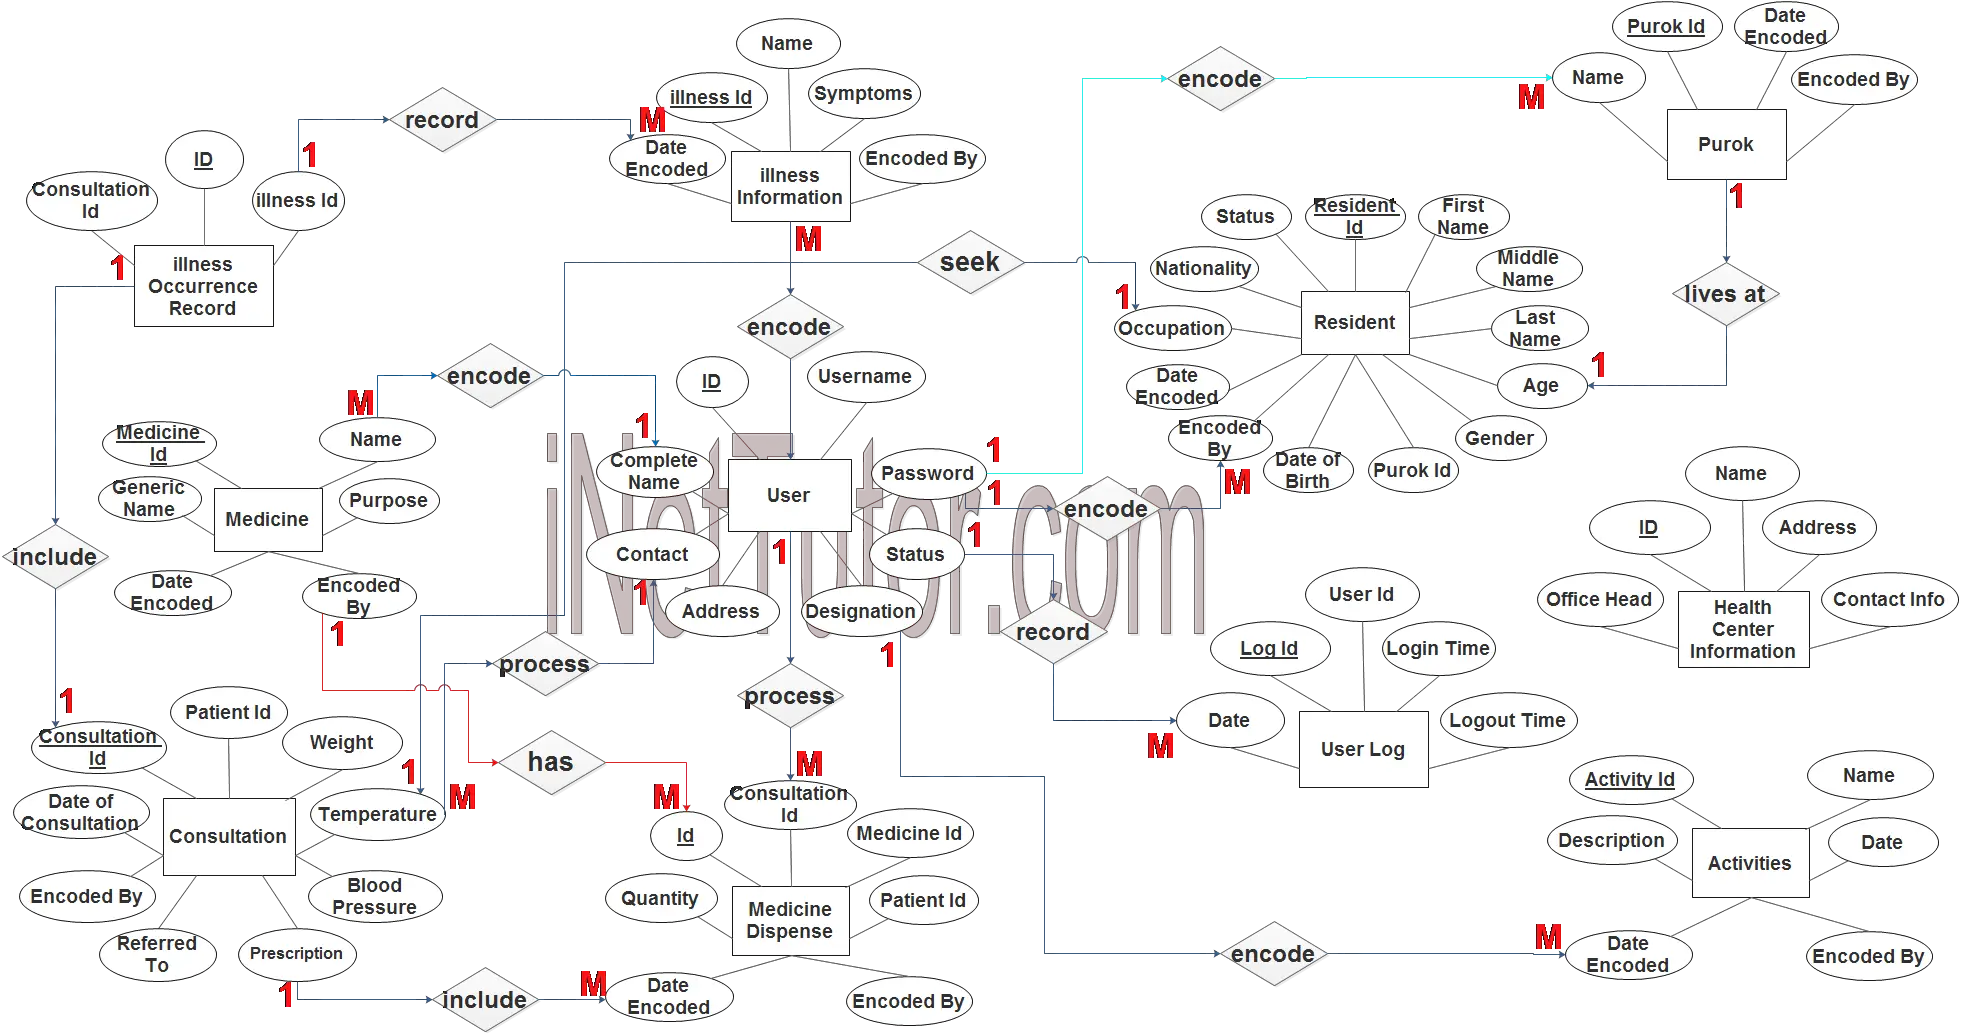 Health Center Patient Information System ER Diagram - Step 3 Complete ERD